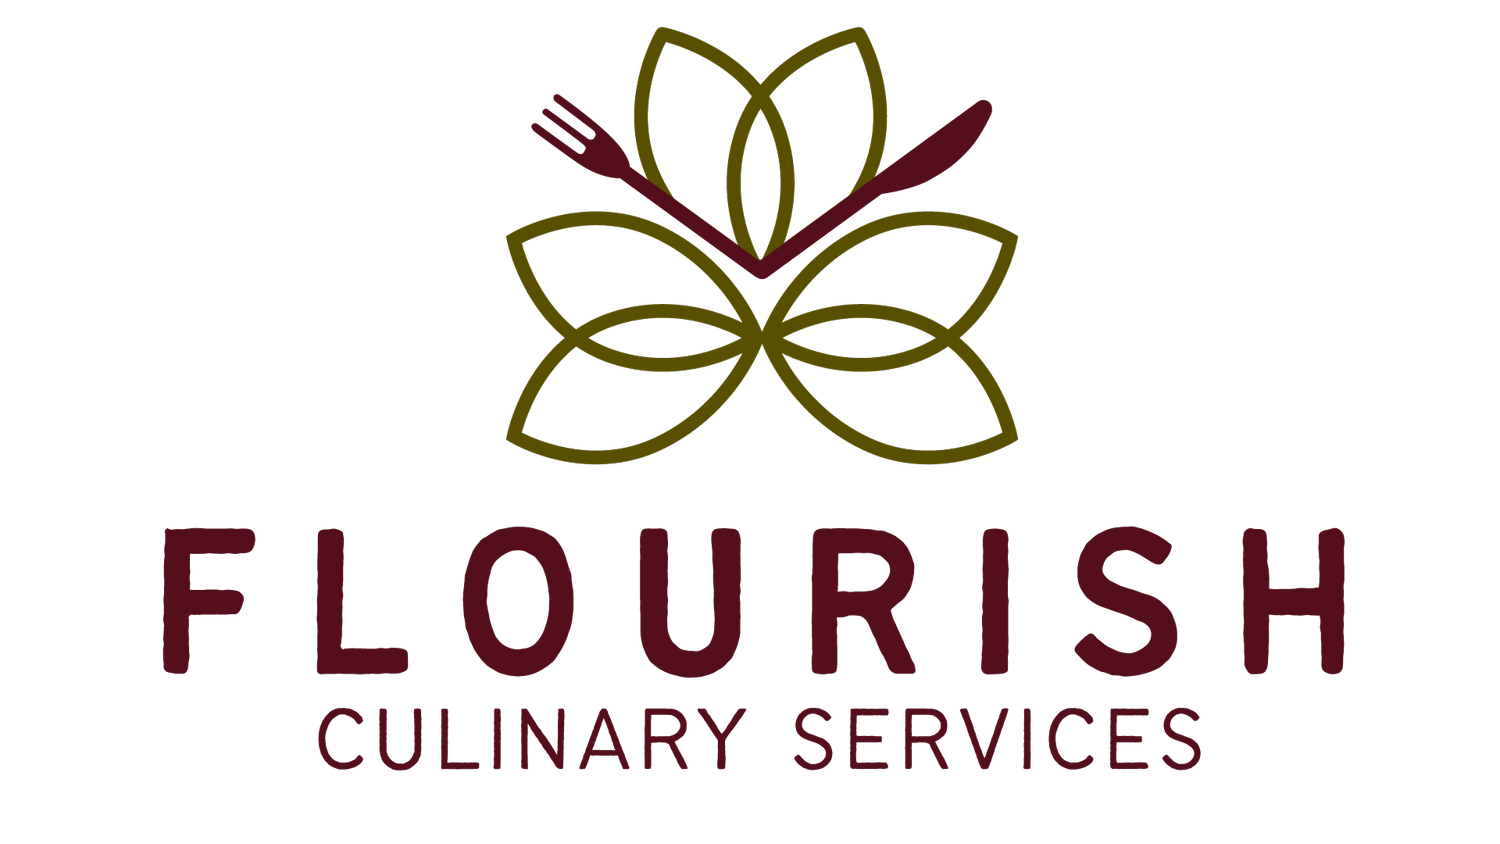 Flourish Culinary Services - Cincinnati, Ohio